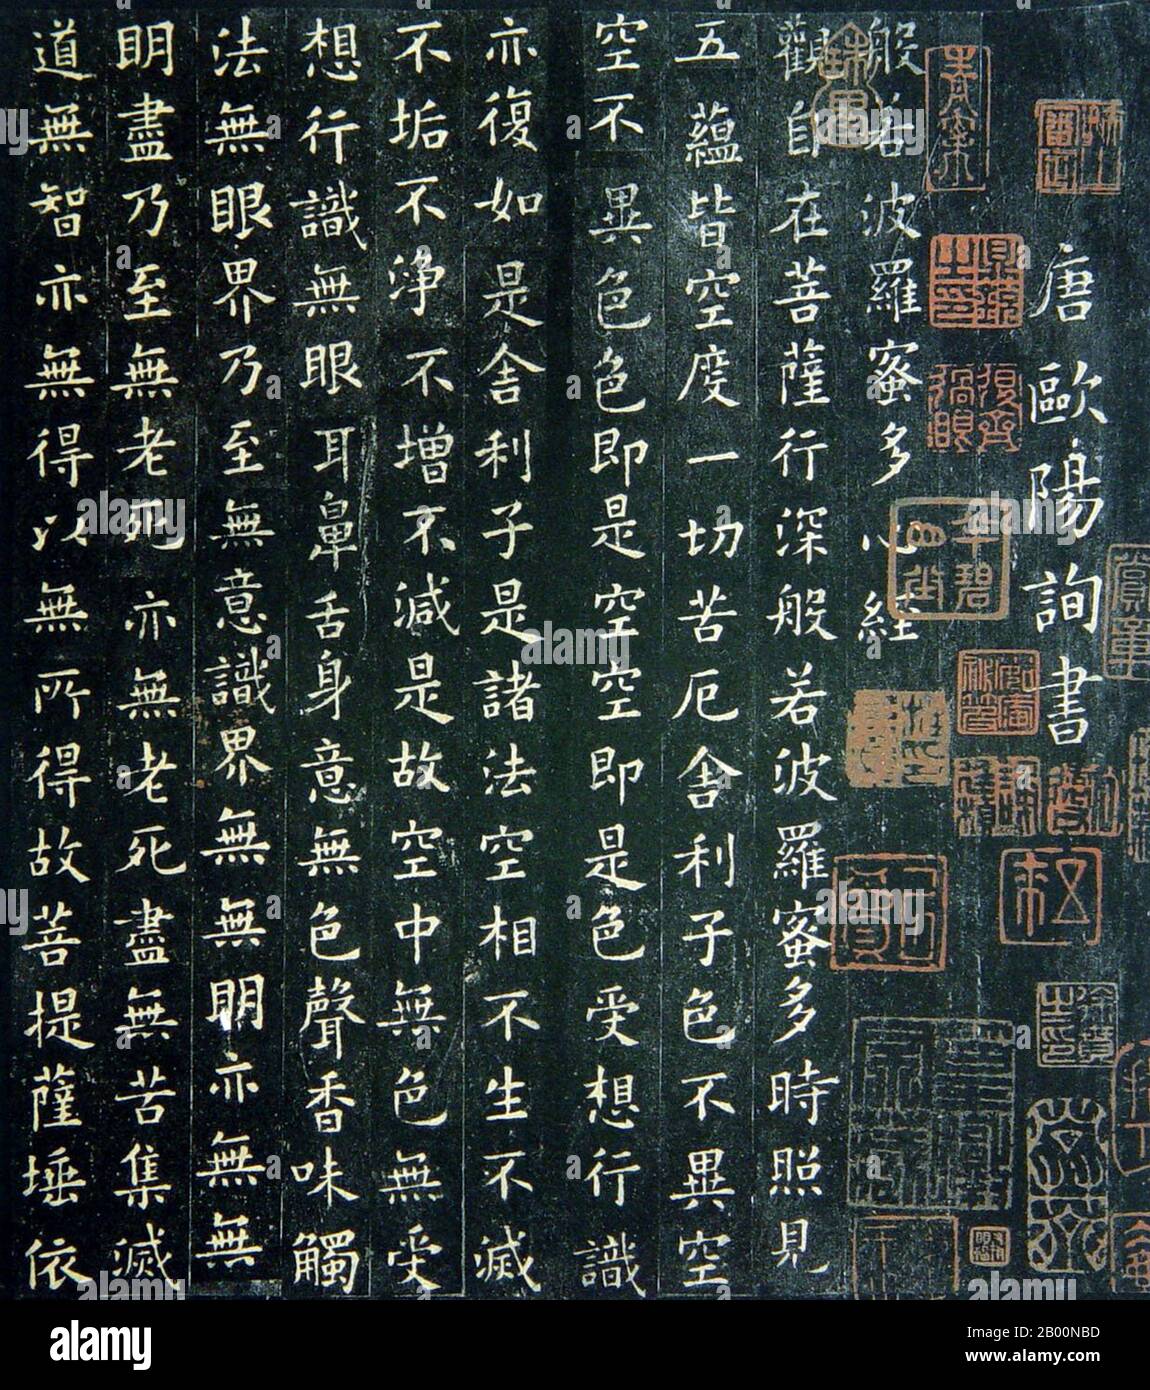 Cina: Script cinese. Tang Dynasty Heart Sutra attribuito a Oh-Yang Sheun (557-641), c.. VI-VII secolo d.C. Il cuore Sūtra, appartenente alla categoria perfezione della saggezza (Prajñāpāramitā) della letteratura buddista Mahāyāna insieme al Diamante Sūtra, è forse il più importante rappresentante del genere. Il cuore Sūtra è composto da 14 shloka in sanscrito, con ogni shloka contenente 32 sillabe. Nella traduzione cinese standard di Xuanzang, ha 260 caratteri cinesi. In inglese è composto da sedici frasi. Foto Stock